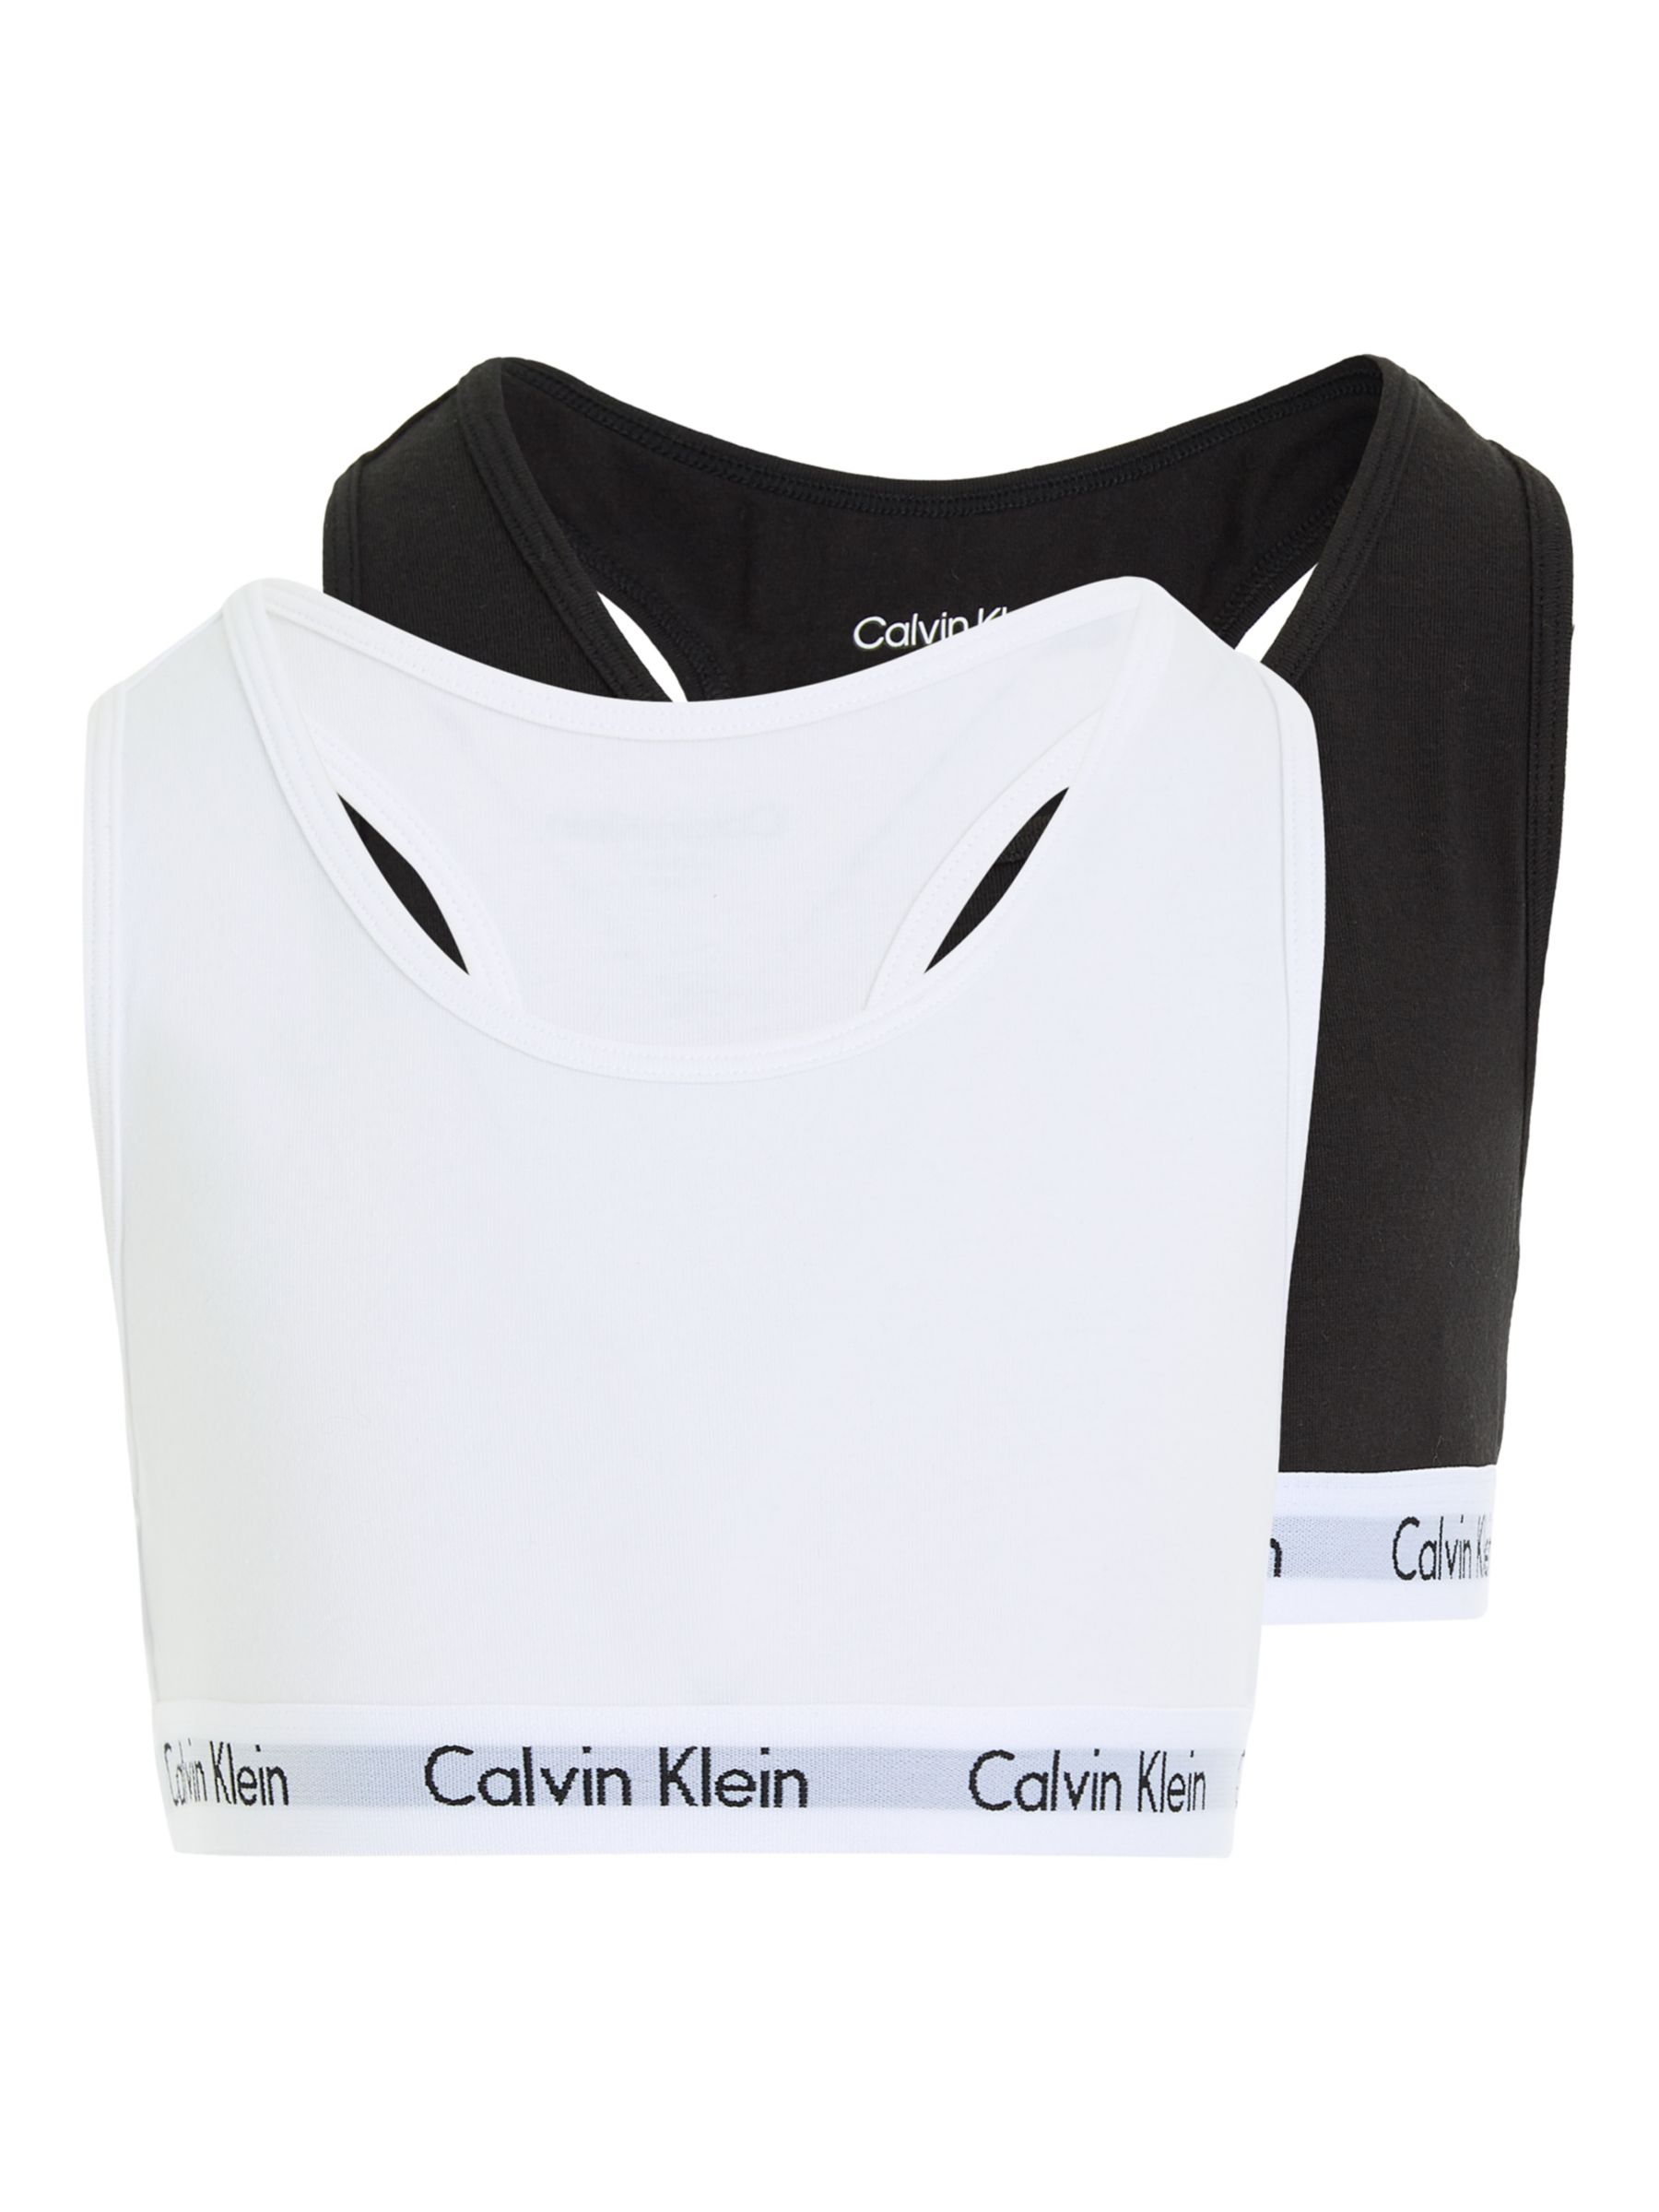 Calvin Klein Kids' Bralette, Pack of 2, Black/White at John Lewis & Partners